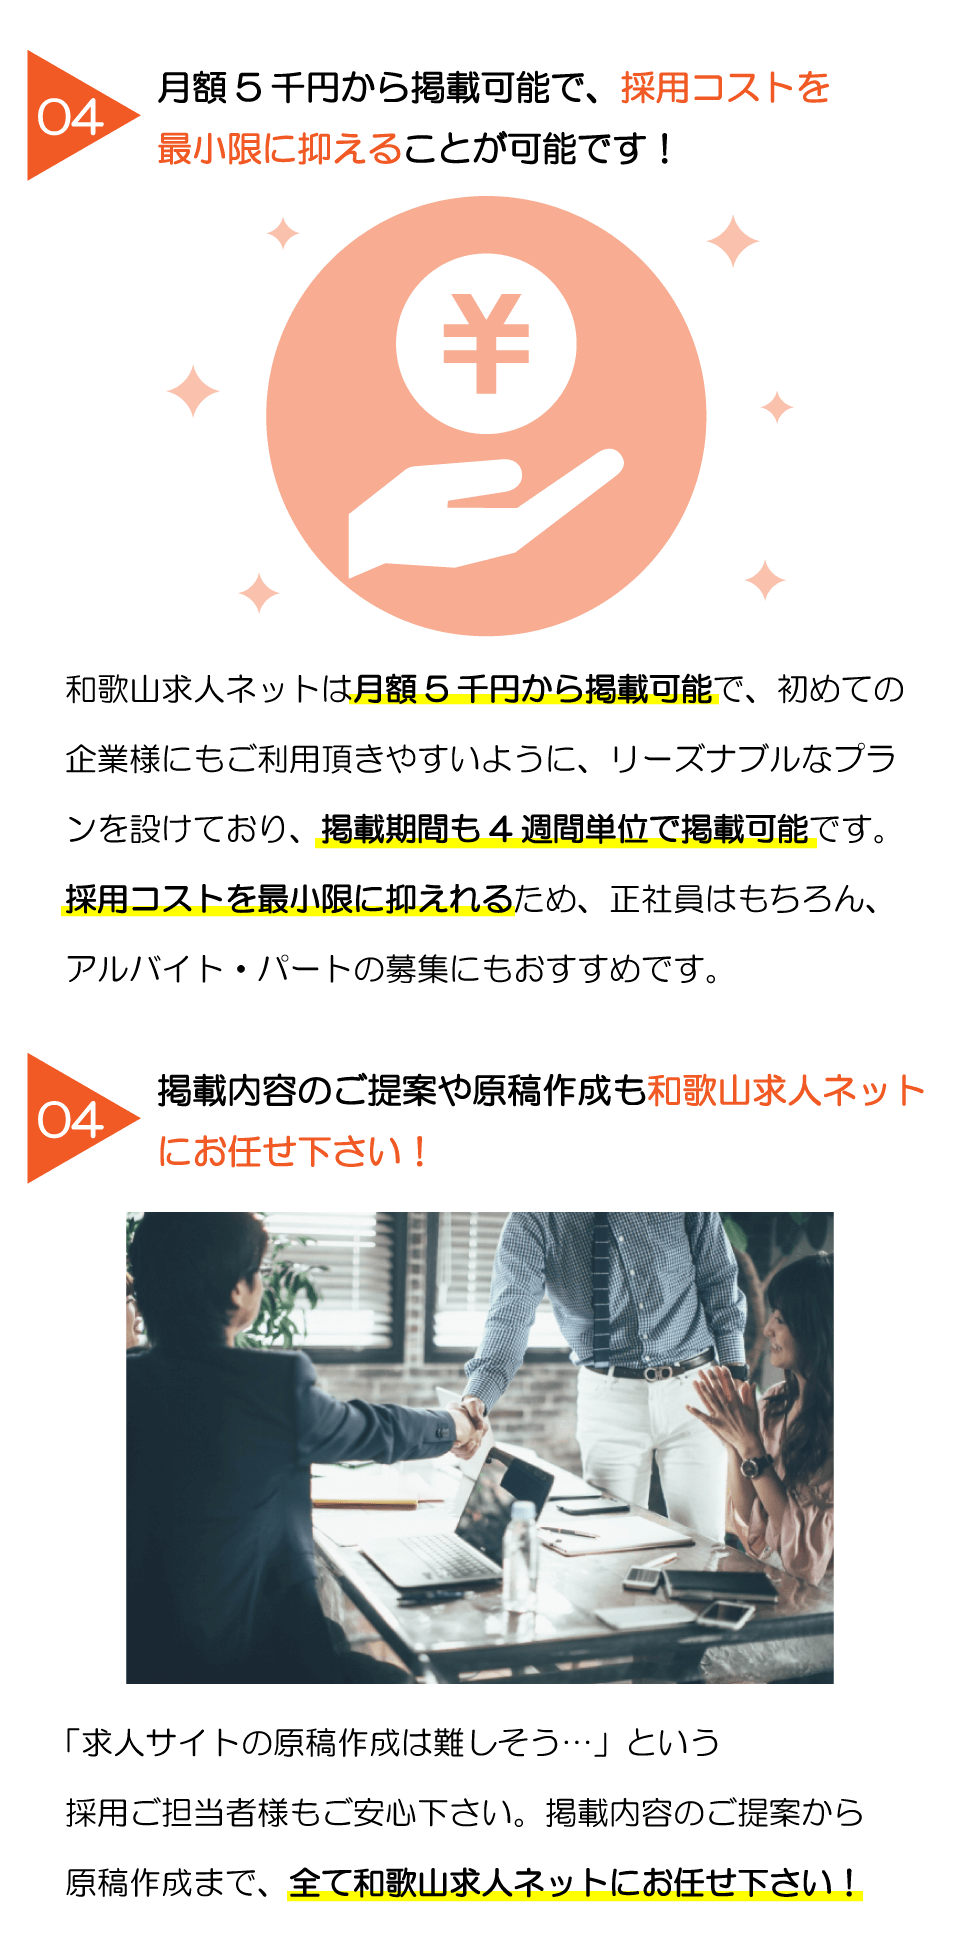 和歌山求人ネットなら採用、募集のお悩みが解決できます。4週間5千円で掲載でき、採用コスト抑えることができます。